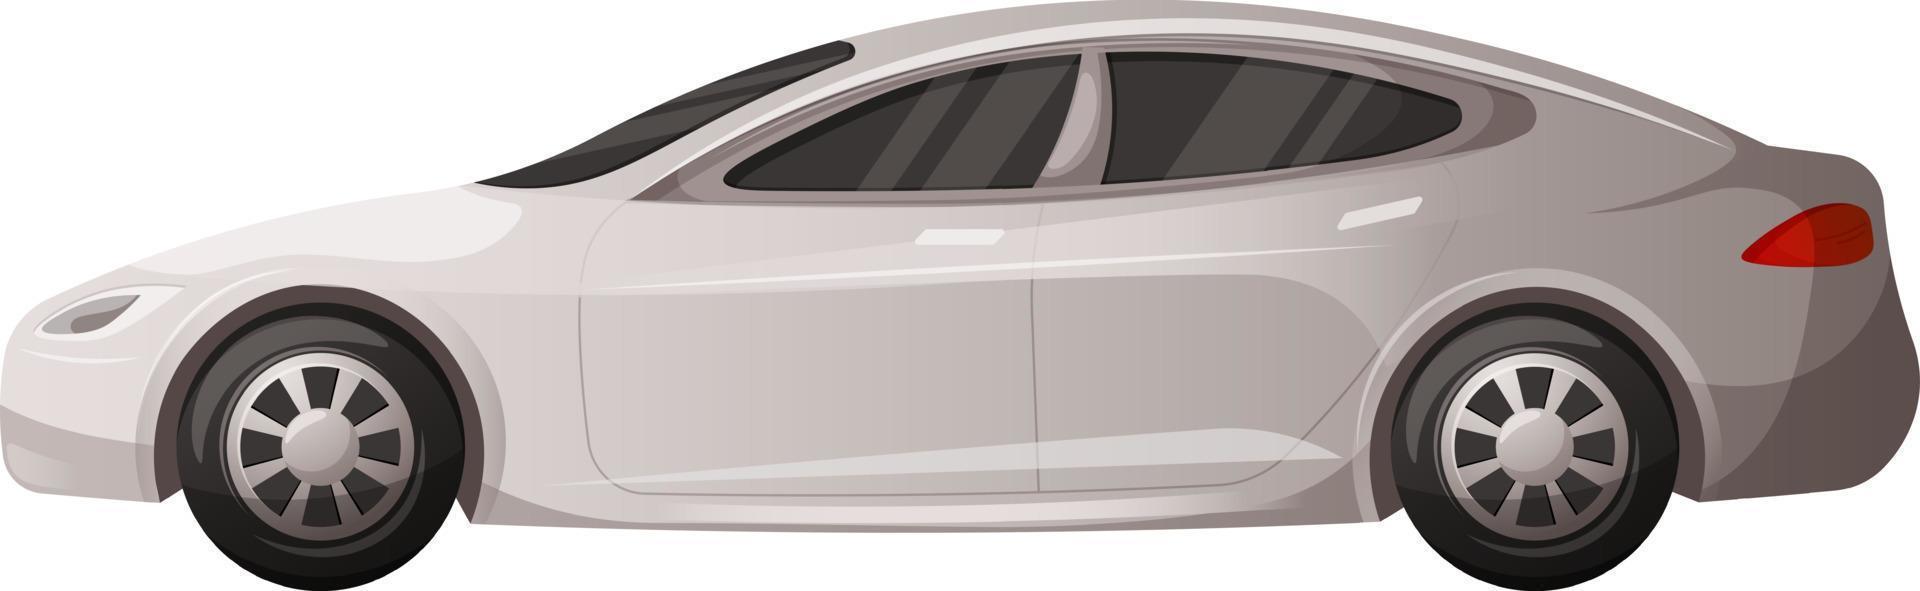 moderne voiture, blanc voiture isolé sur transparent Contexte. vecteur dessin animé illustration de voitures avec sedan taxi